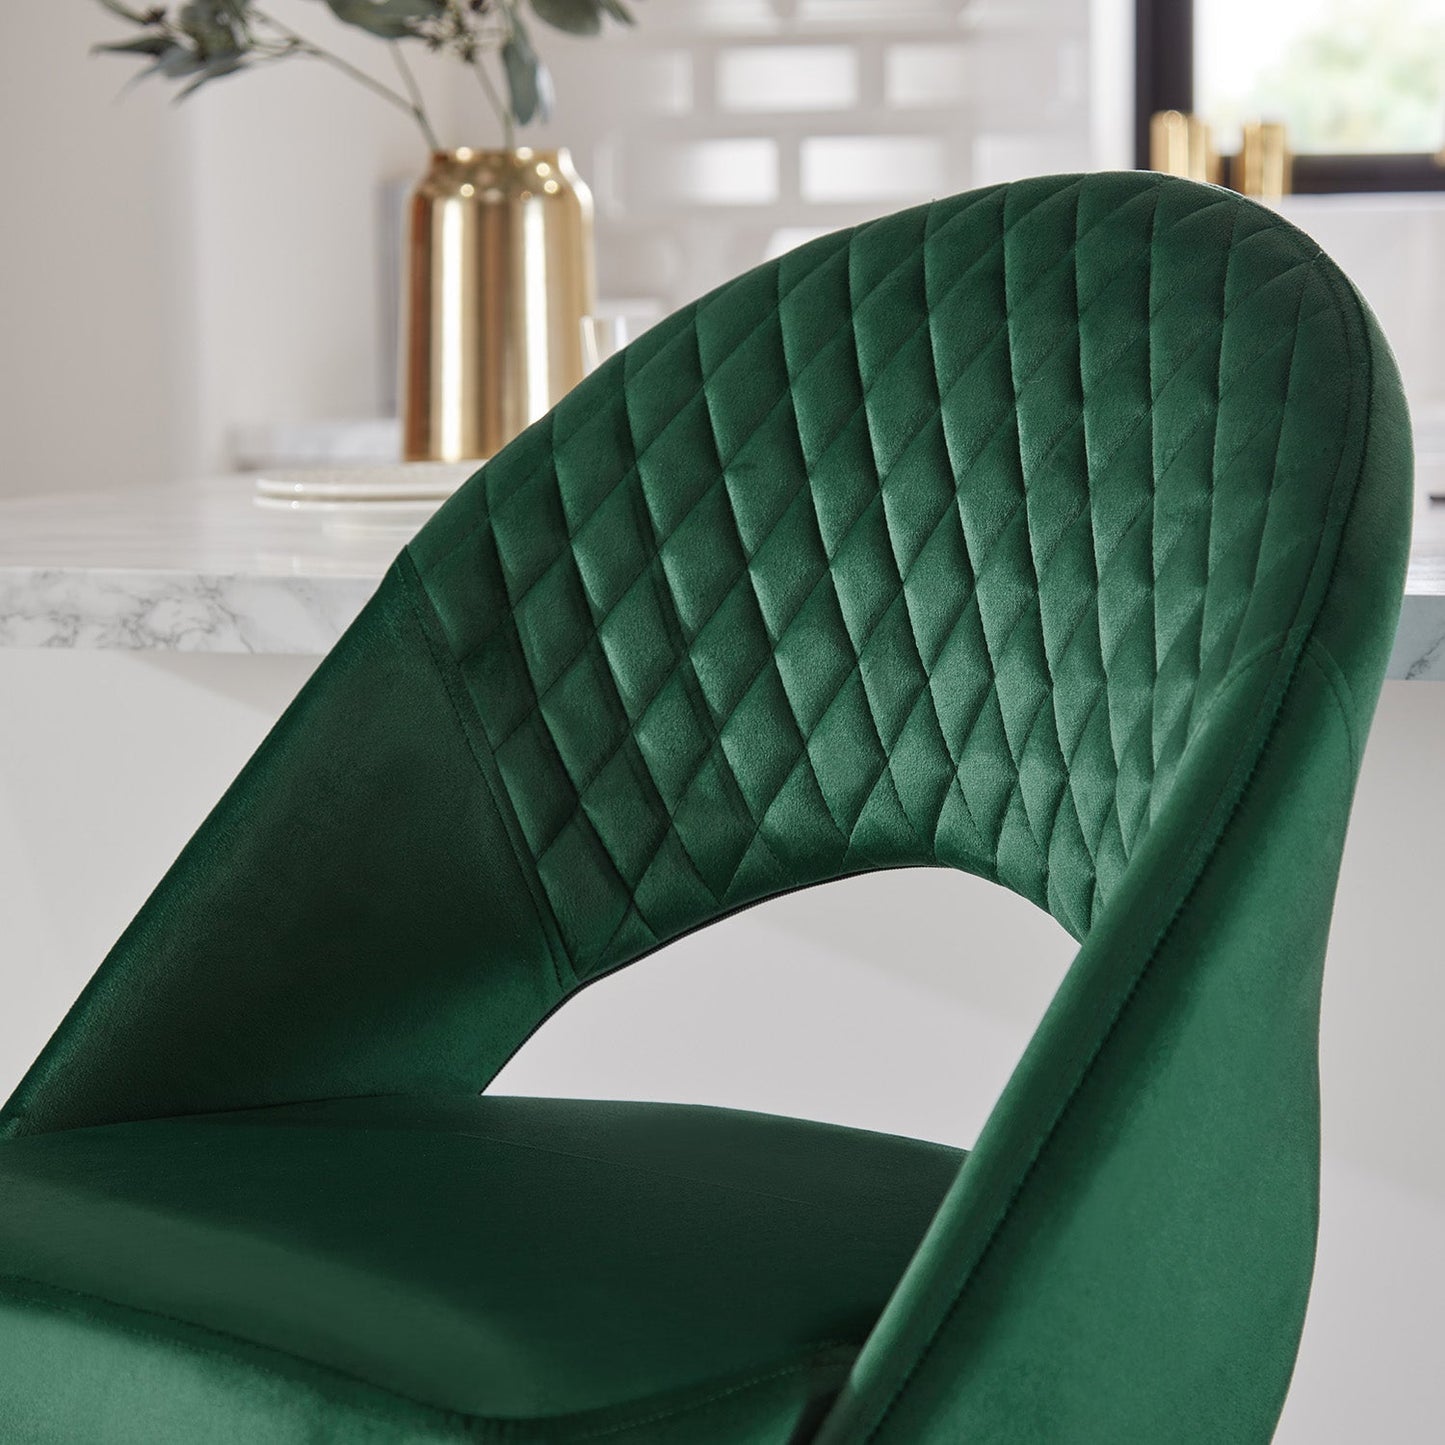 Marilyn bar stool - set of 2 - green velvet - Laura James